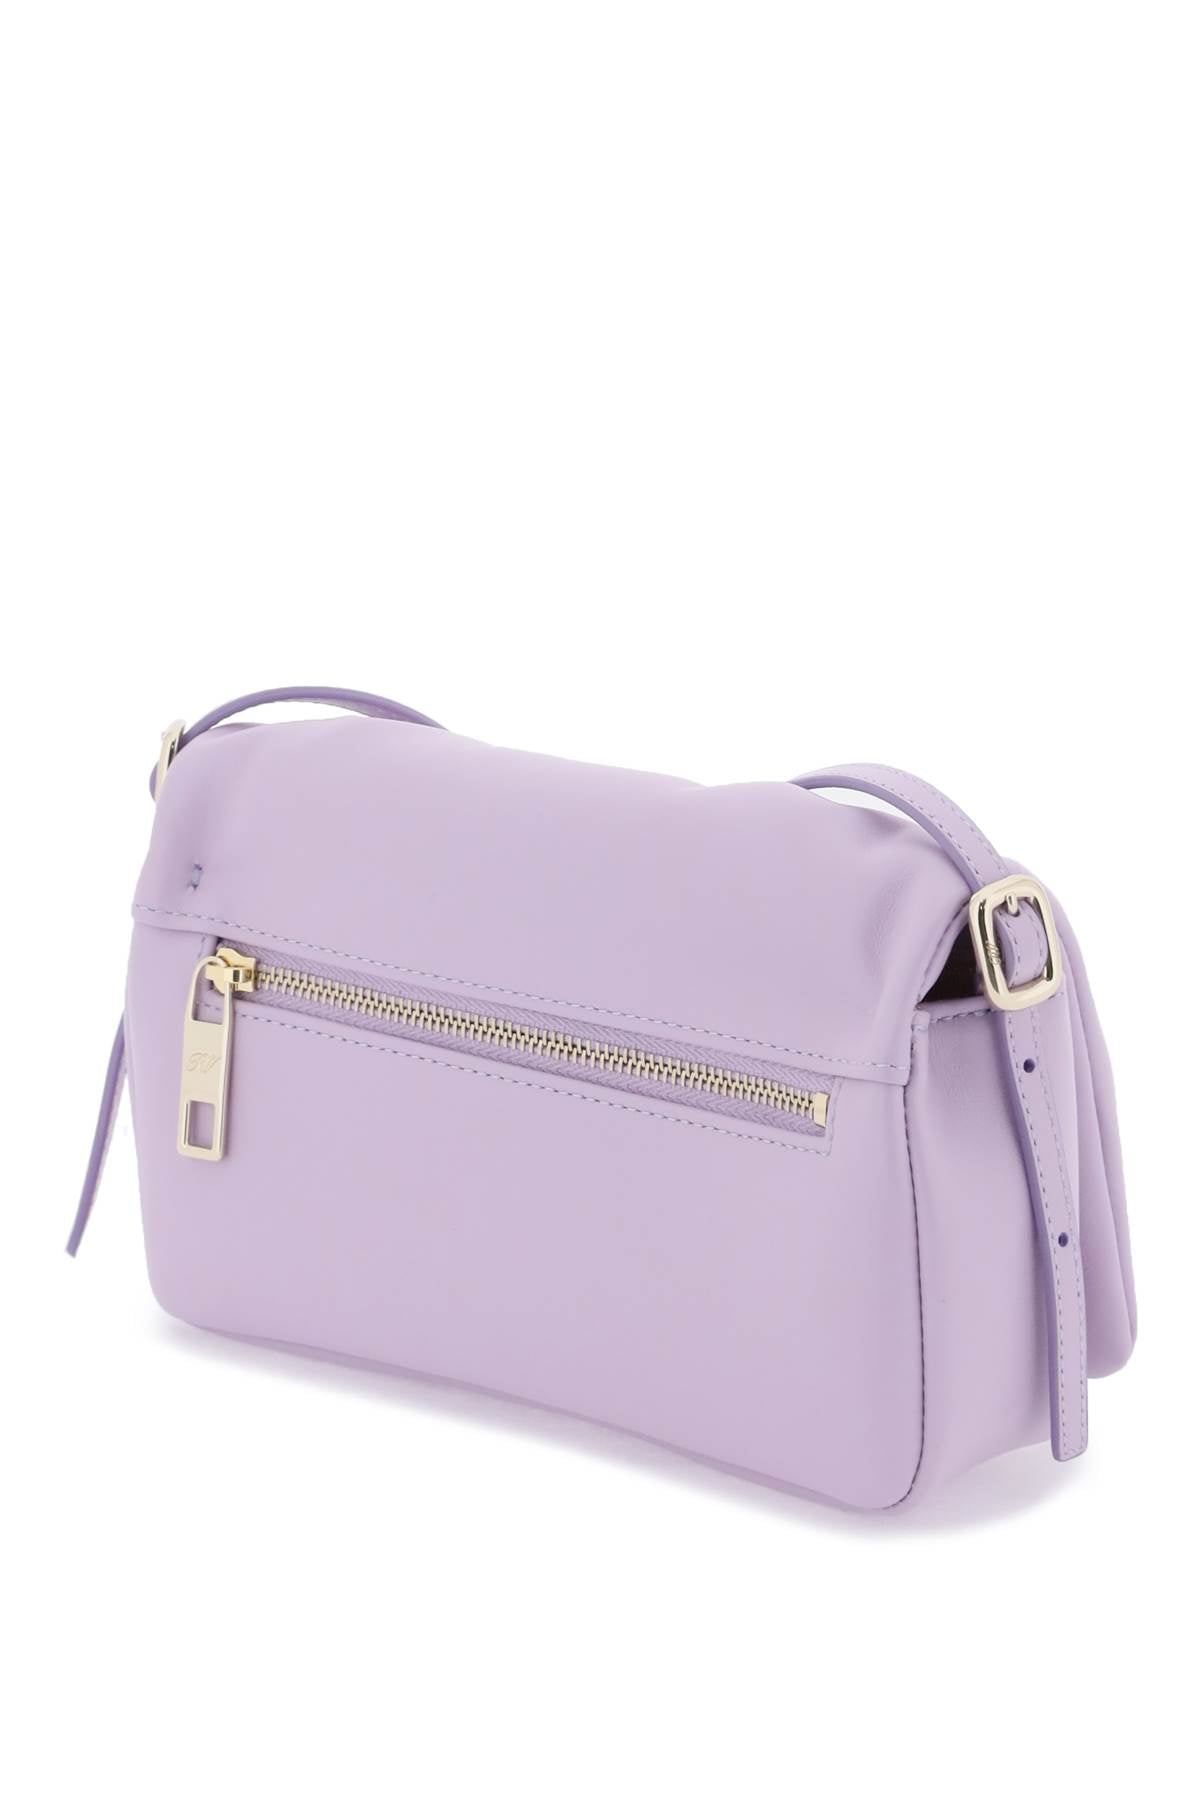 Túi xách mini chéo Purple Leather với khóa Viv' Choc